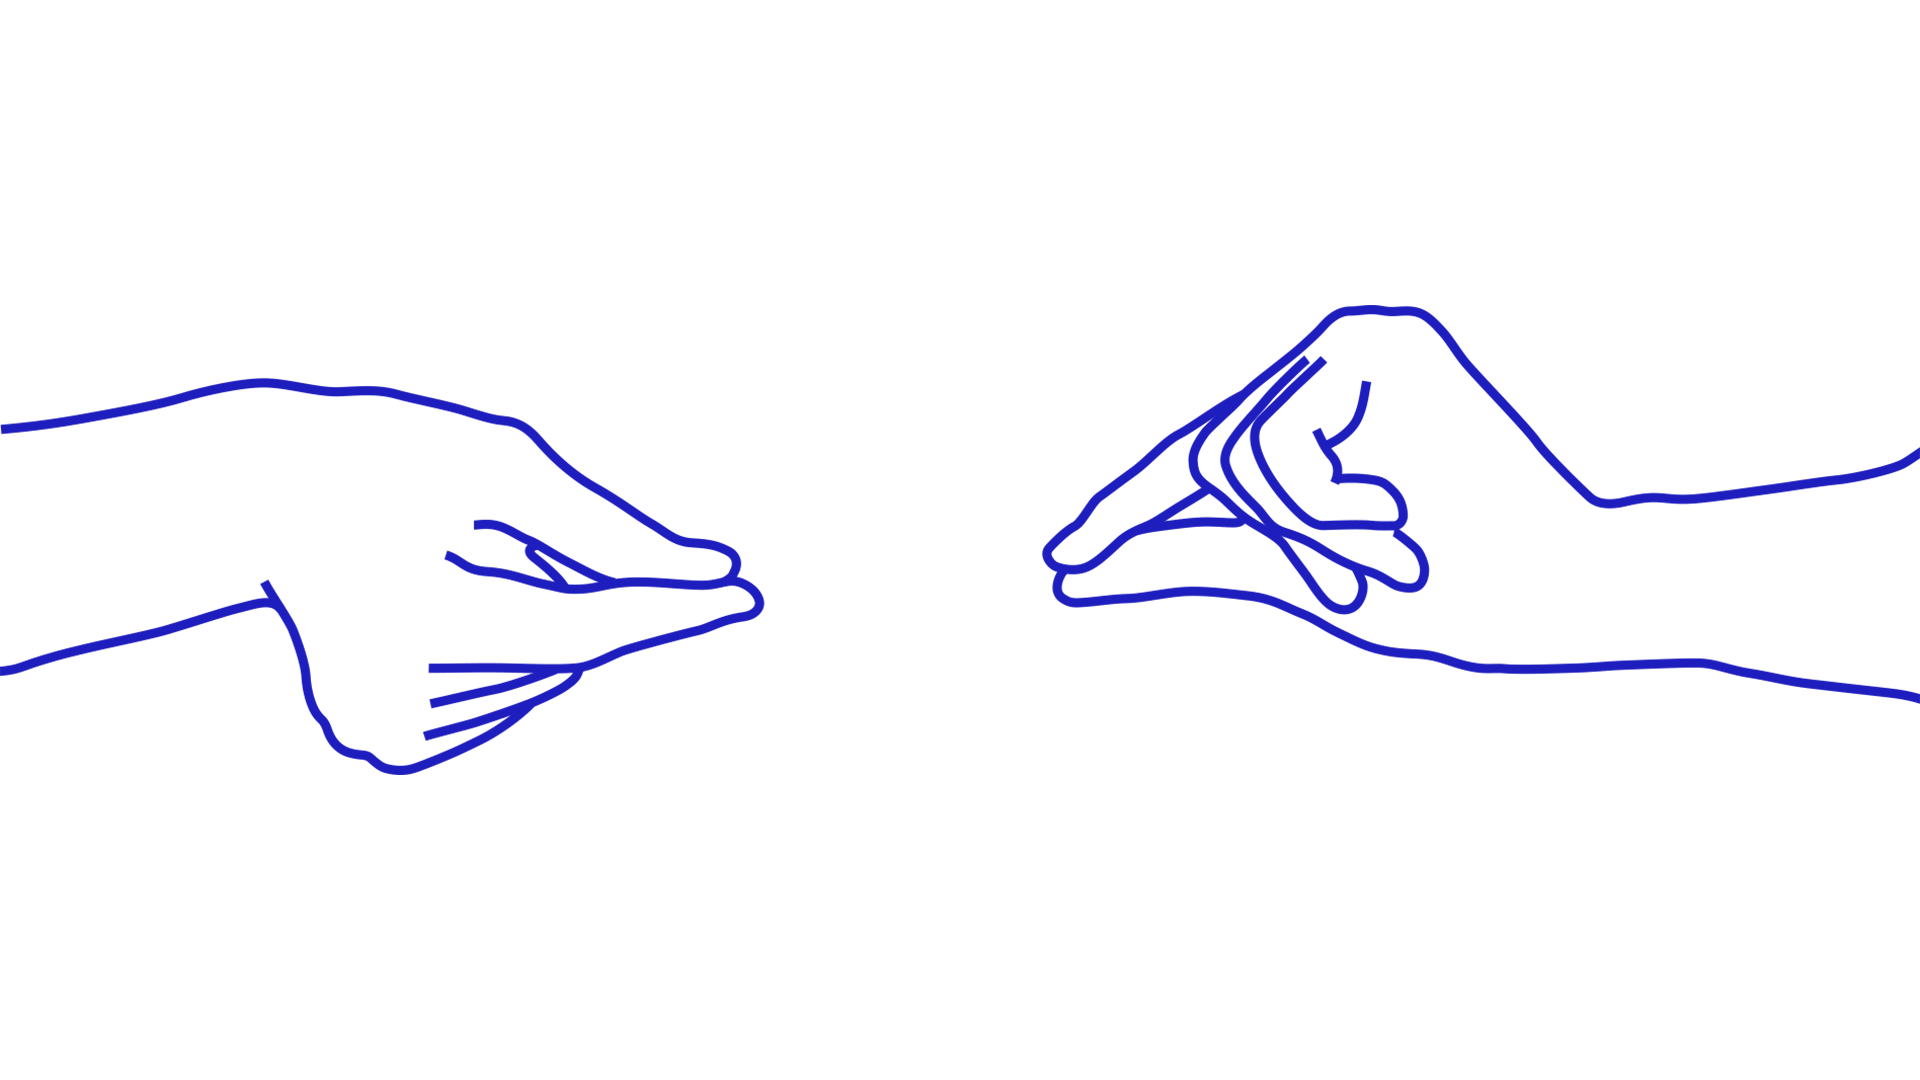 Титульное изображение для страницы события: анимация рук, сложенных в жестах «пик-пик» на русском жестовом языке 